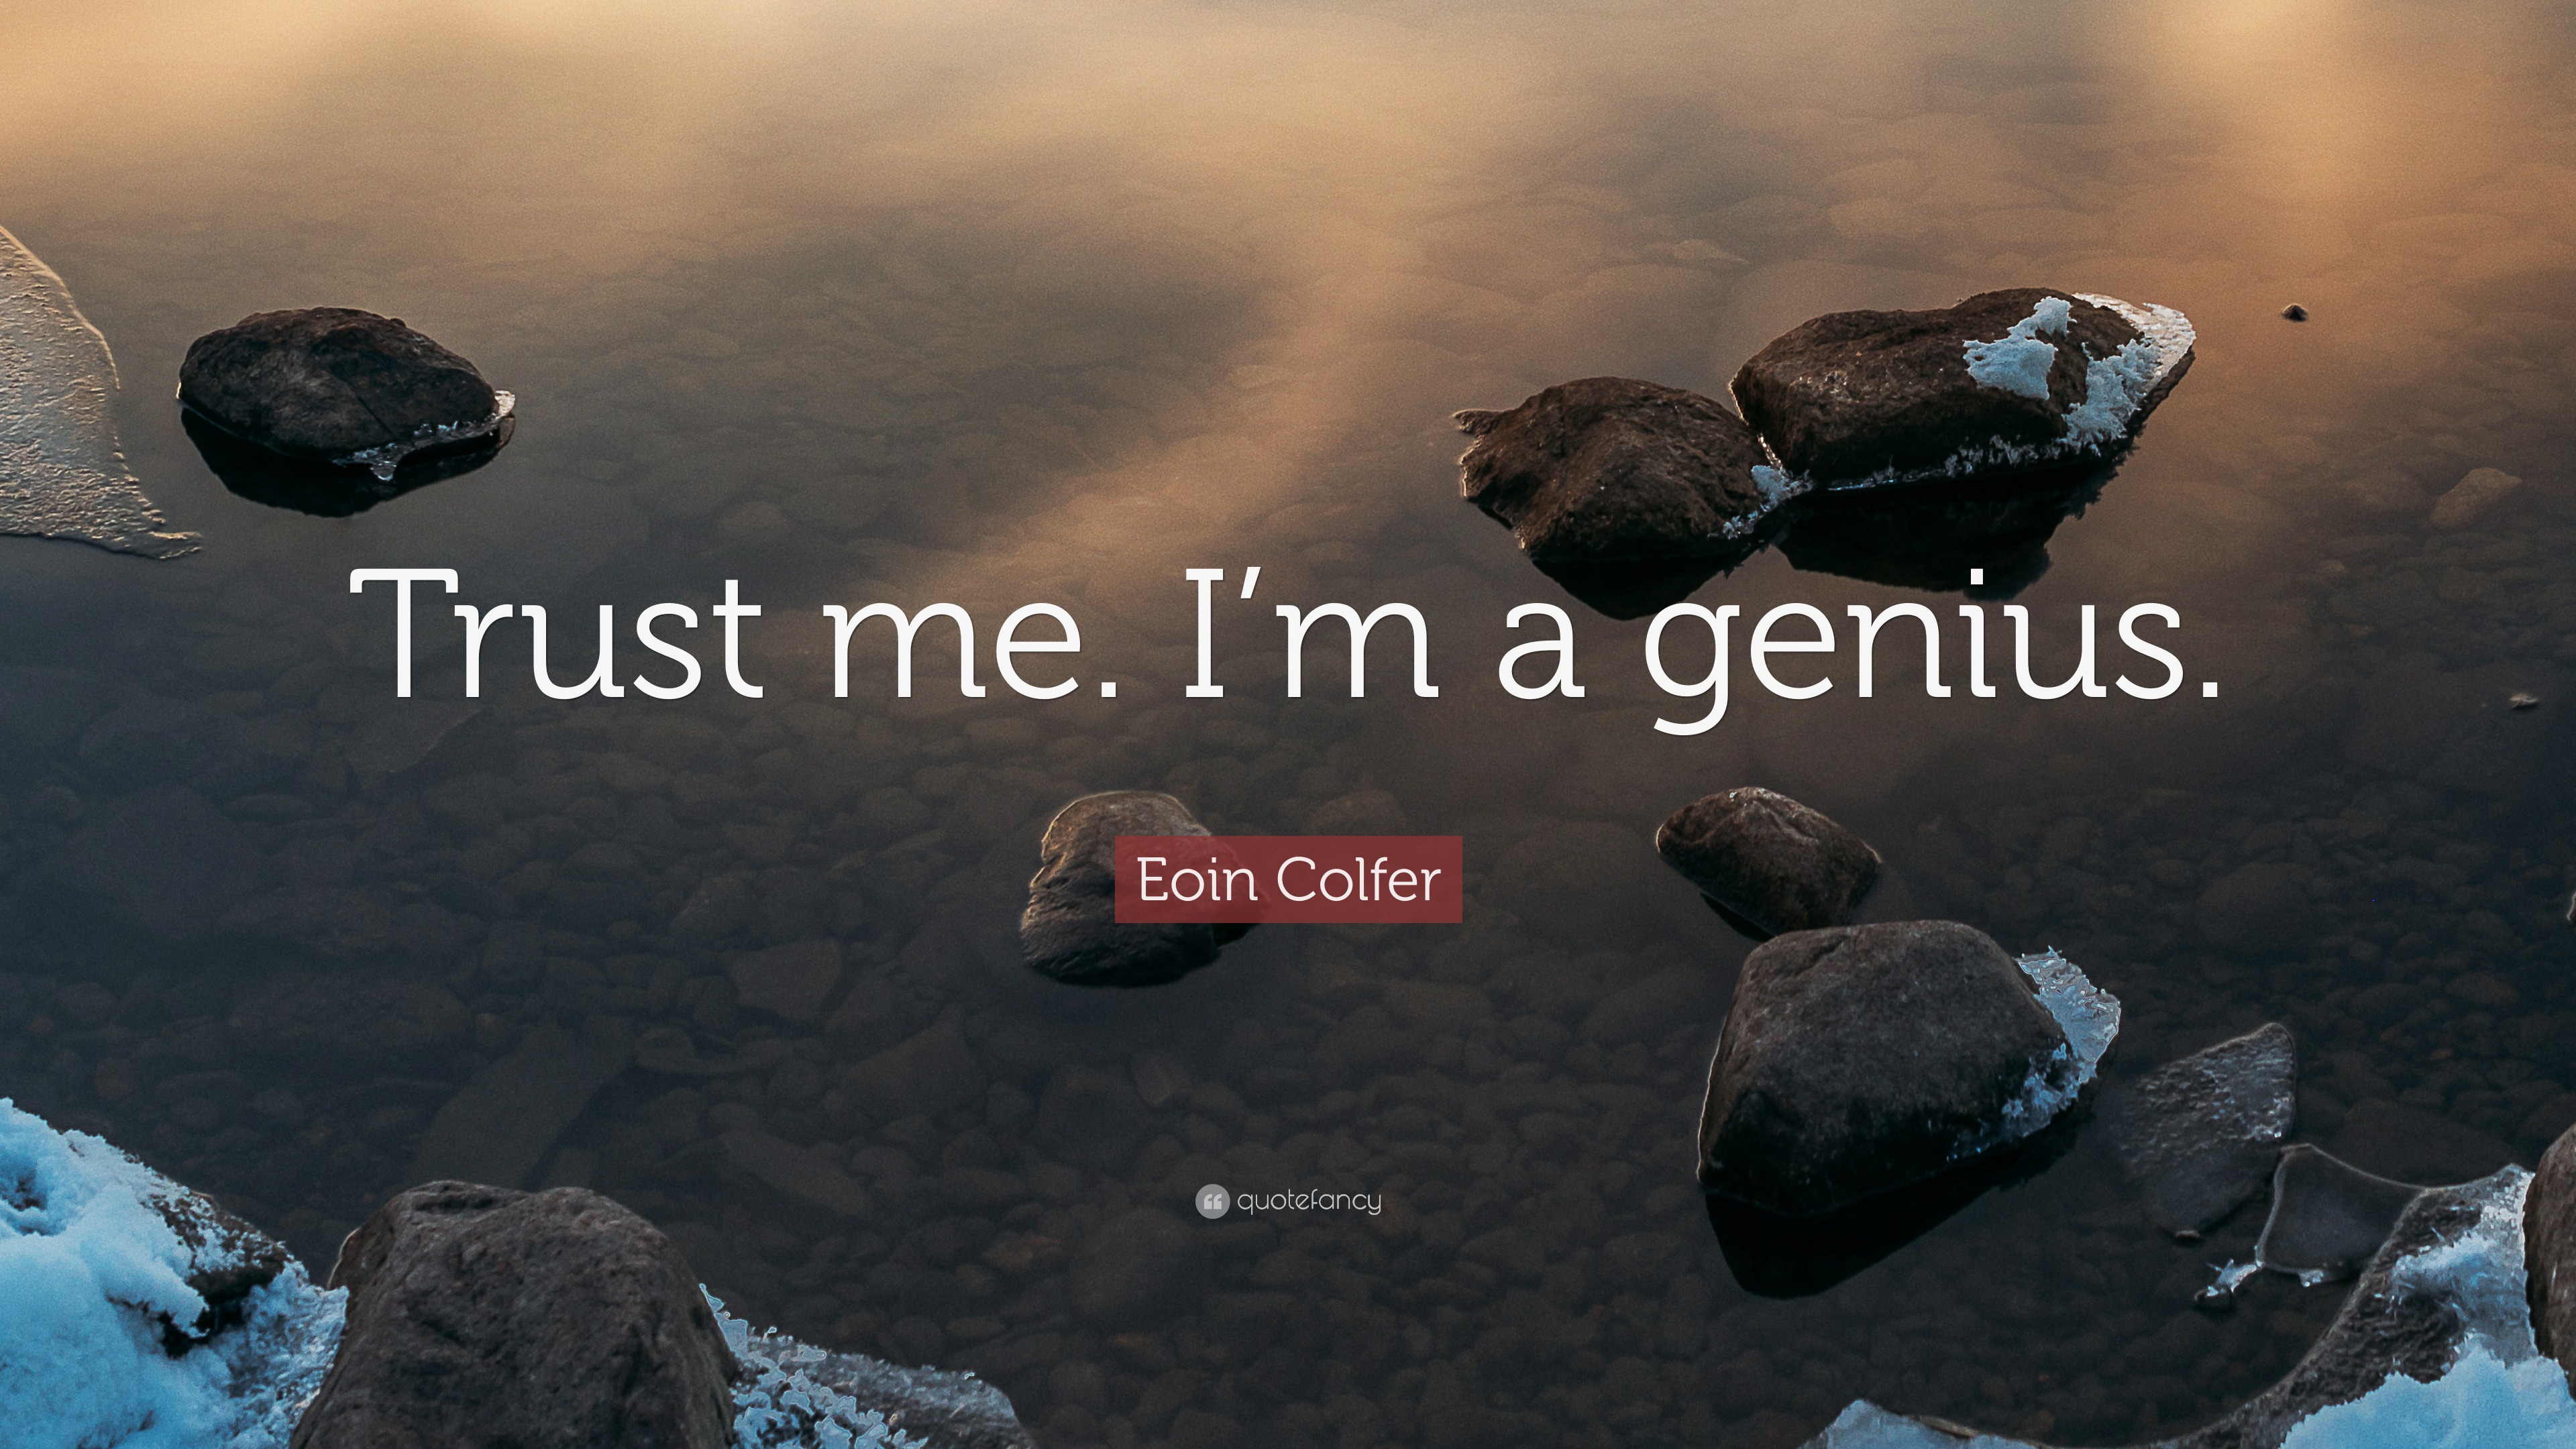 Eoin Colfer Quote: “Trust me. I'm a genius.”